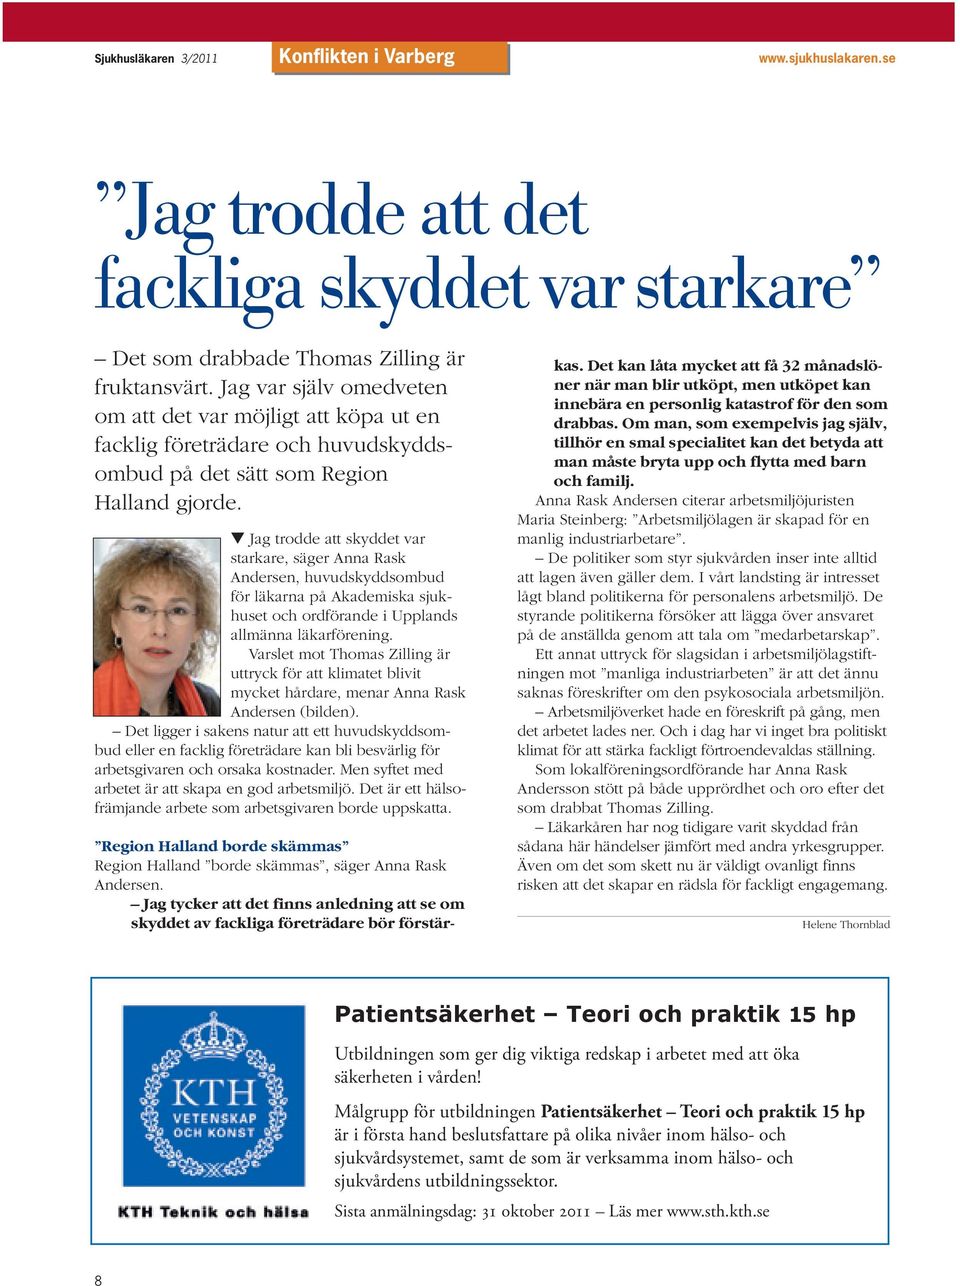 Jag trodde att skyddet var starkare, säger Anna Rask Andersen, huvudskyddsombud för läkarna på Akademiska sjukhuset och ordförande i Upplands allmänna läkarförening.